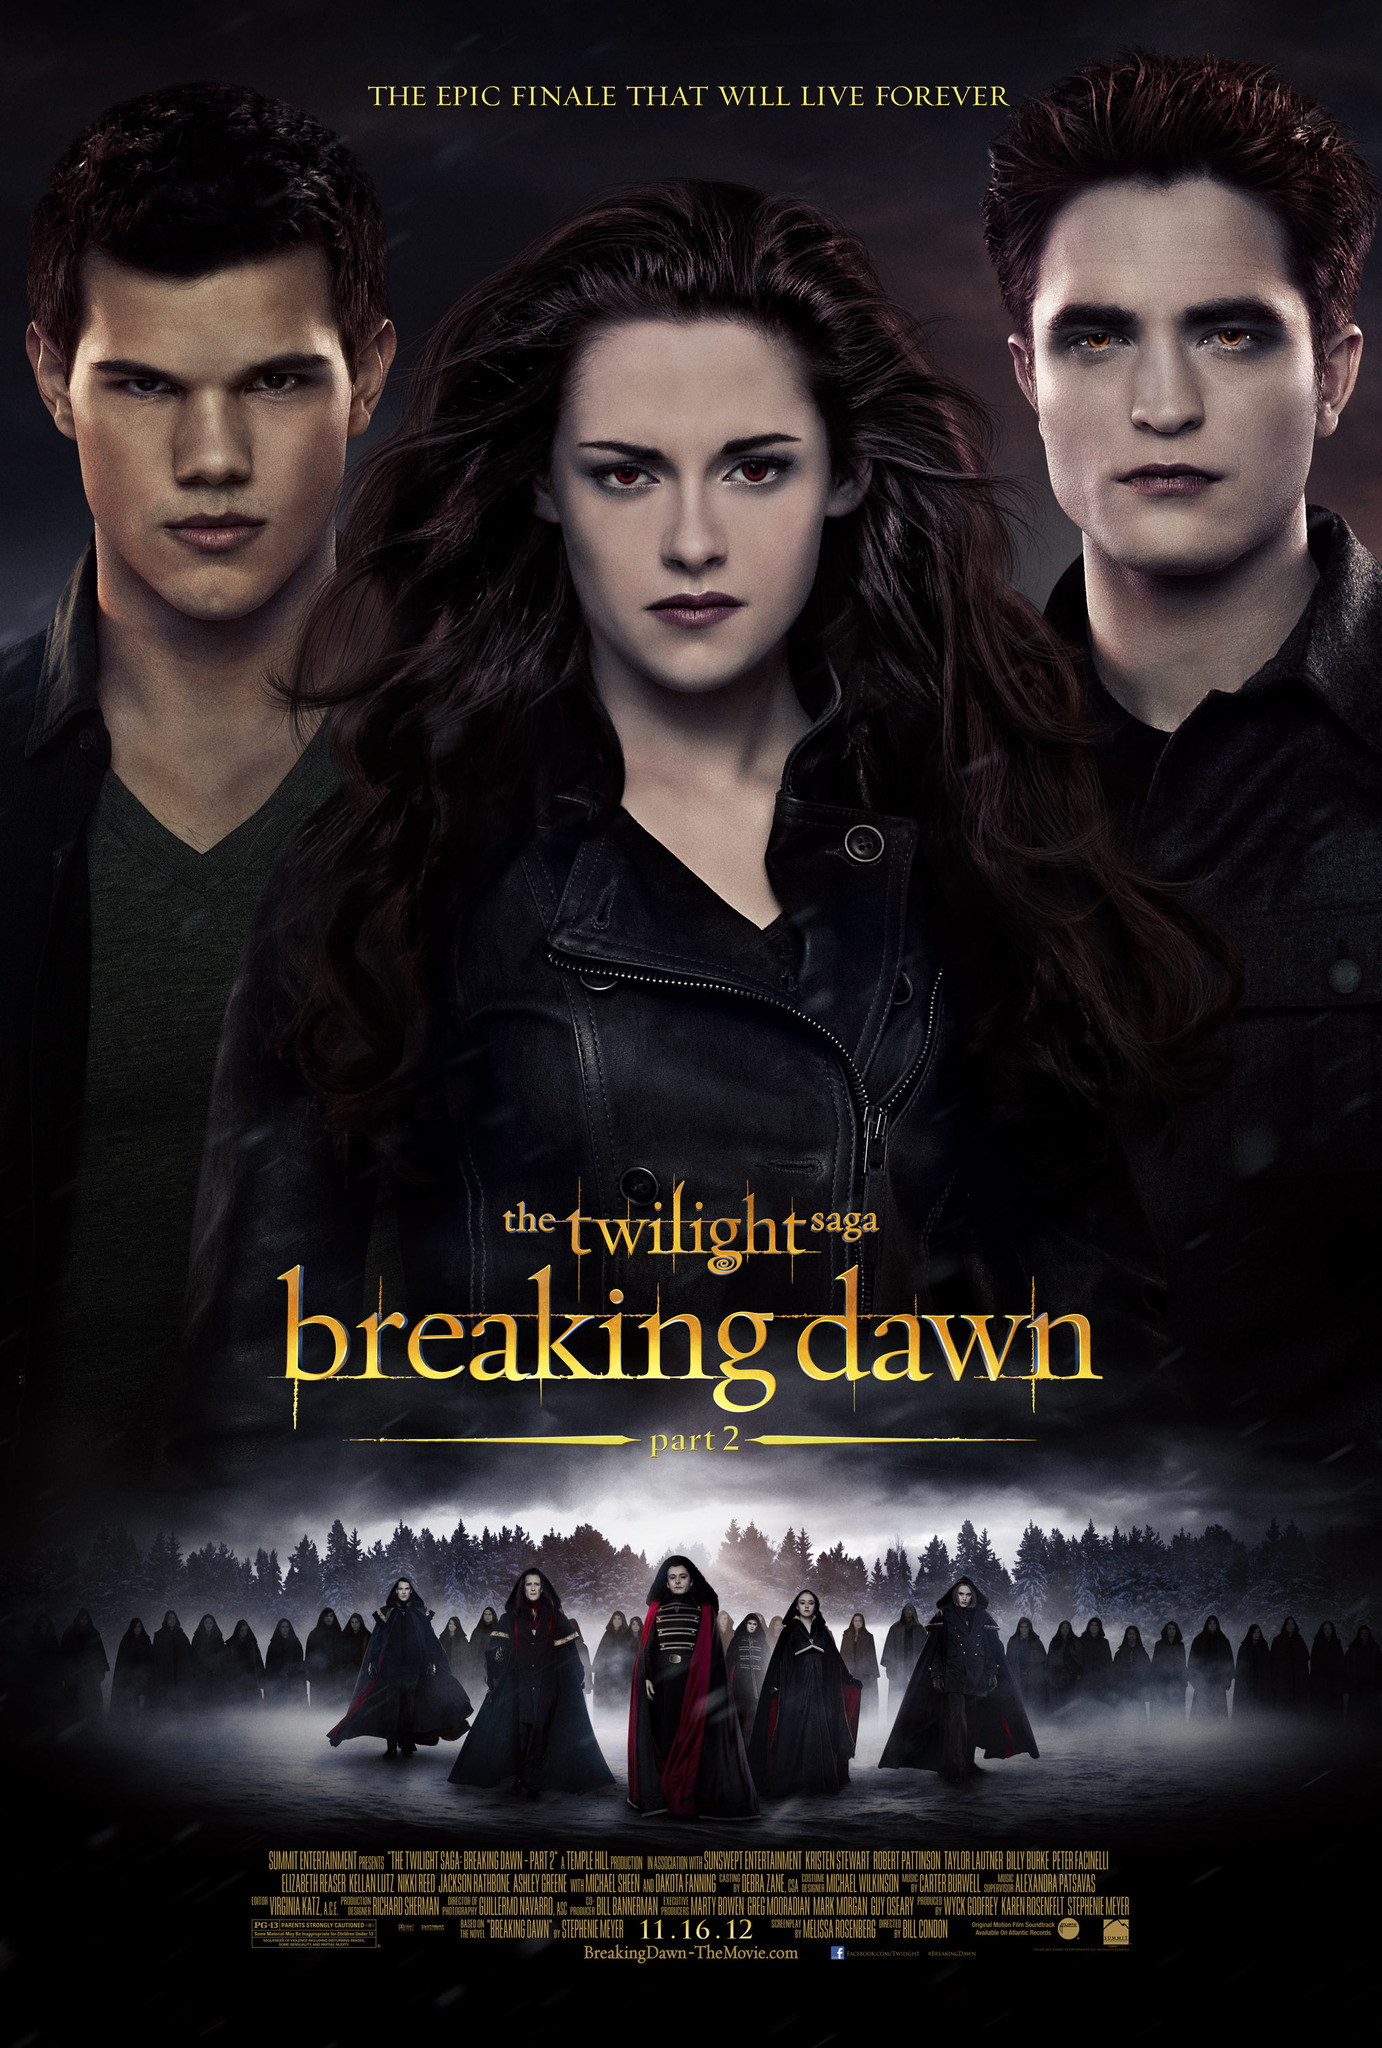 Twilight saga part 1 in language english download free